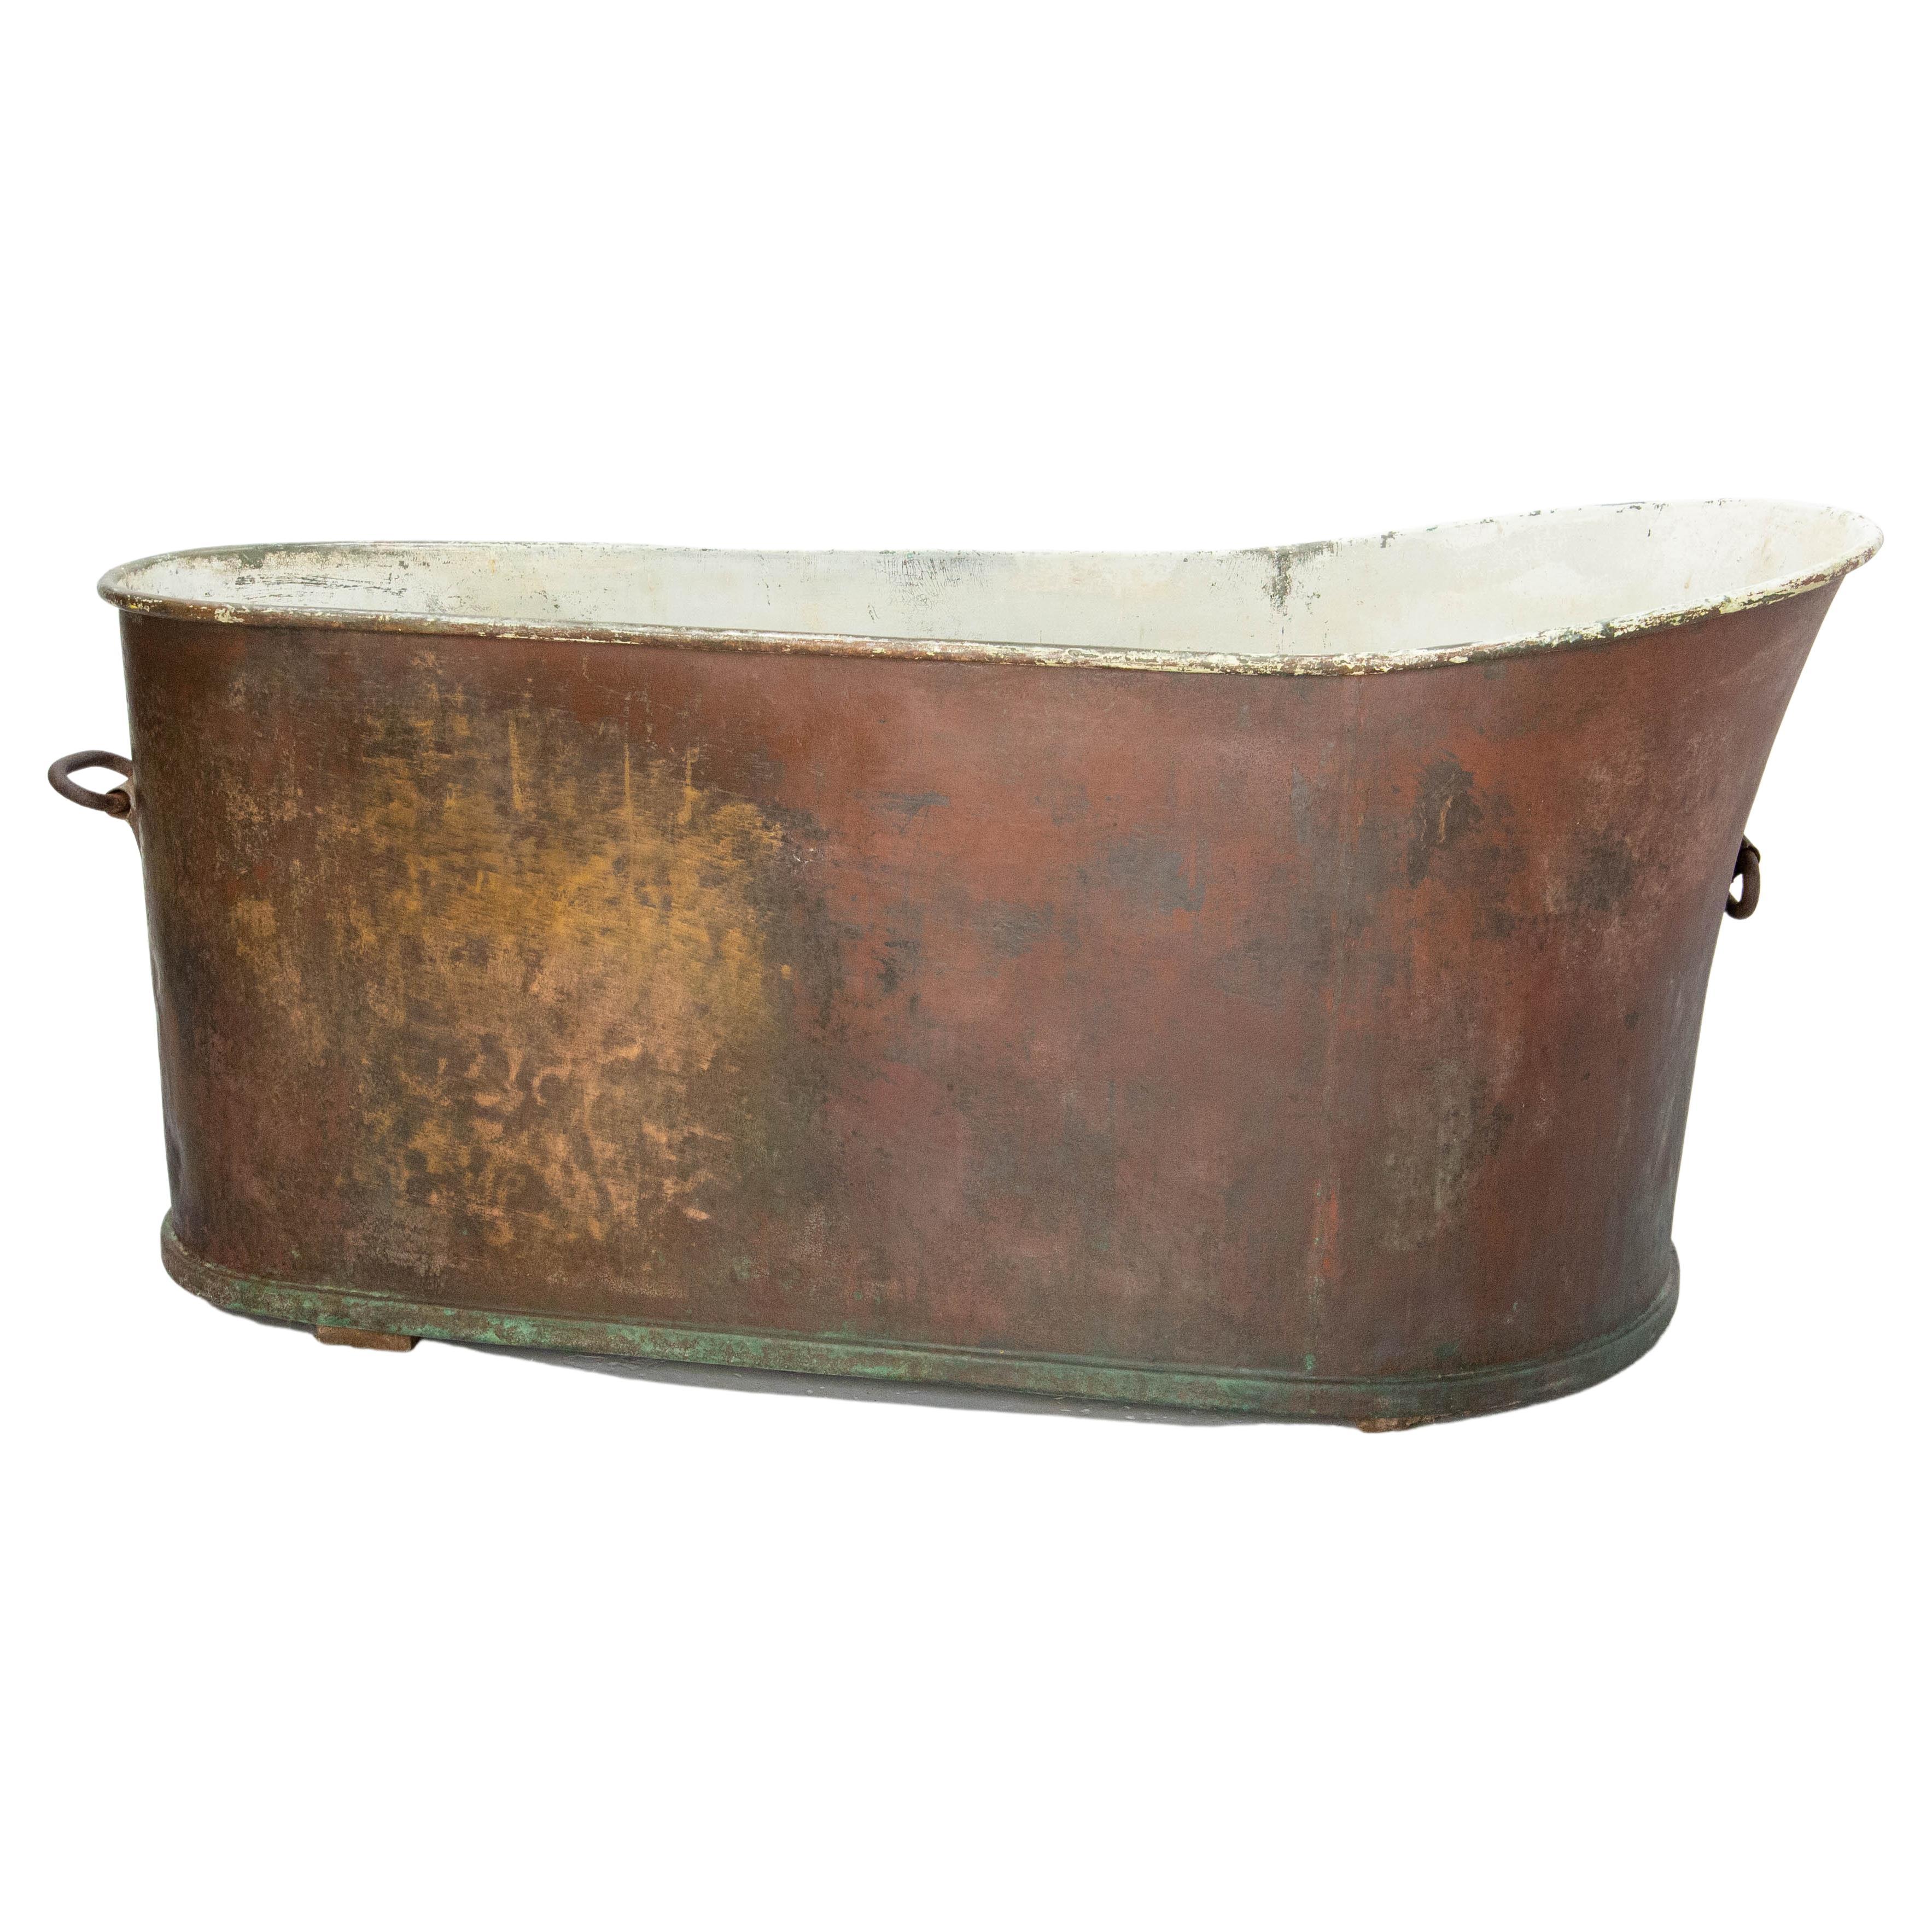 Antike französische Badewanne aus Kupfer.
Heute kann sie wie früher als Badewanne verwendet werden, aber auch als Pflanzgefäß, Jardinière oder, warum nicht, als Behälter zum Kühlen von Getränken während einer Party.

Guter authentischer